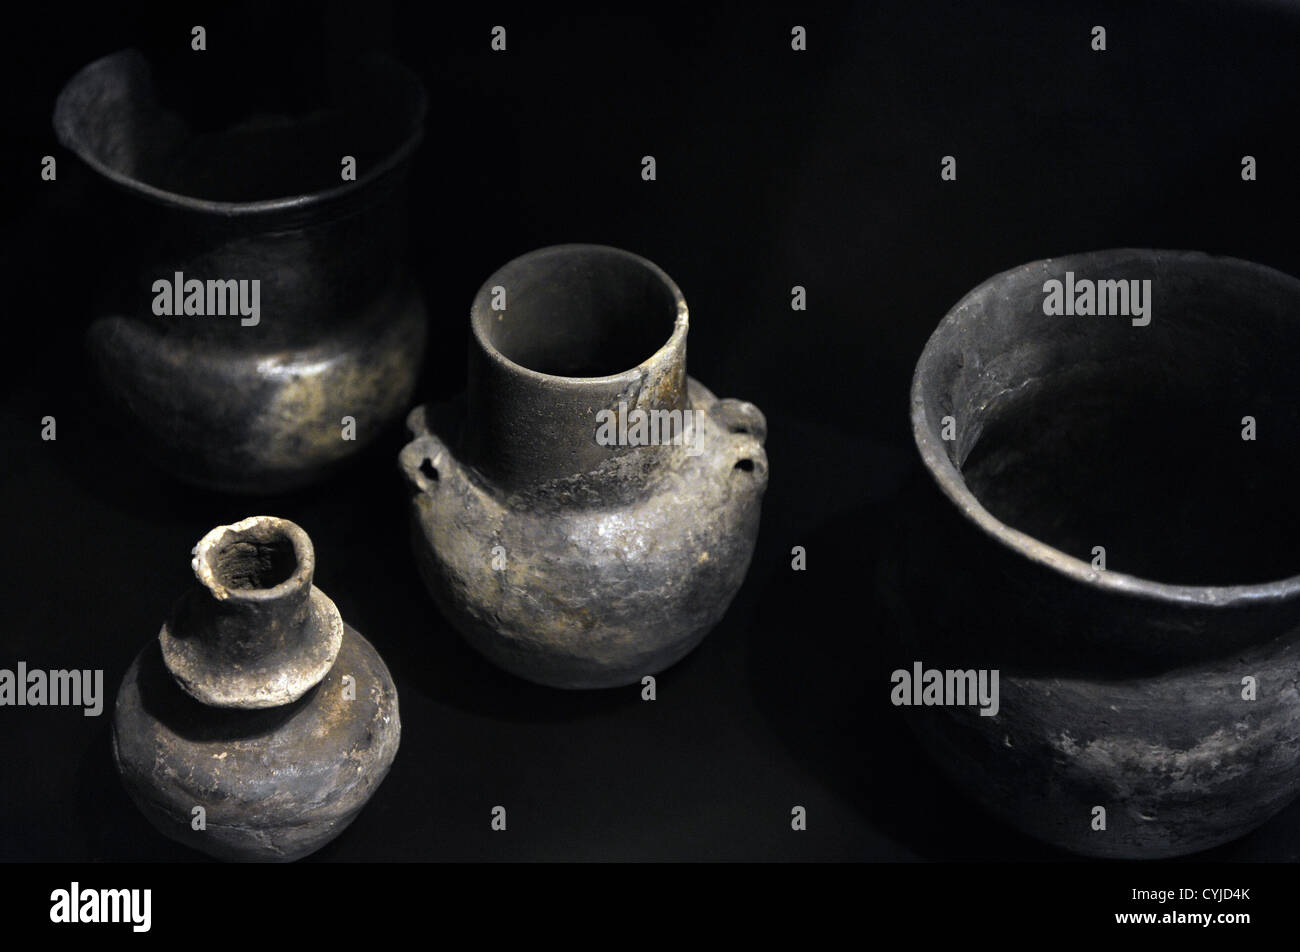 Ceramica. Da sacrifici fatti dagli agricoltori presso il lago. Periodo Neolitico. 3900-3500 A.C. Museo nazionale di Danimarca. Foto Stock